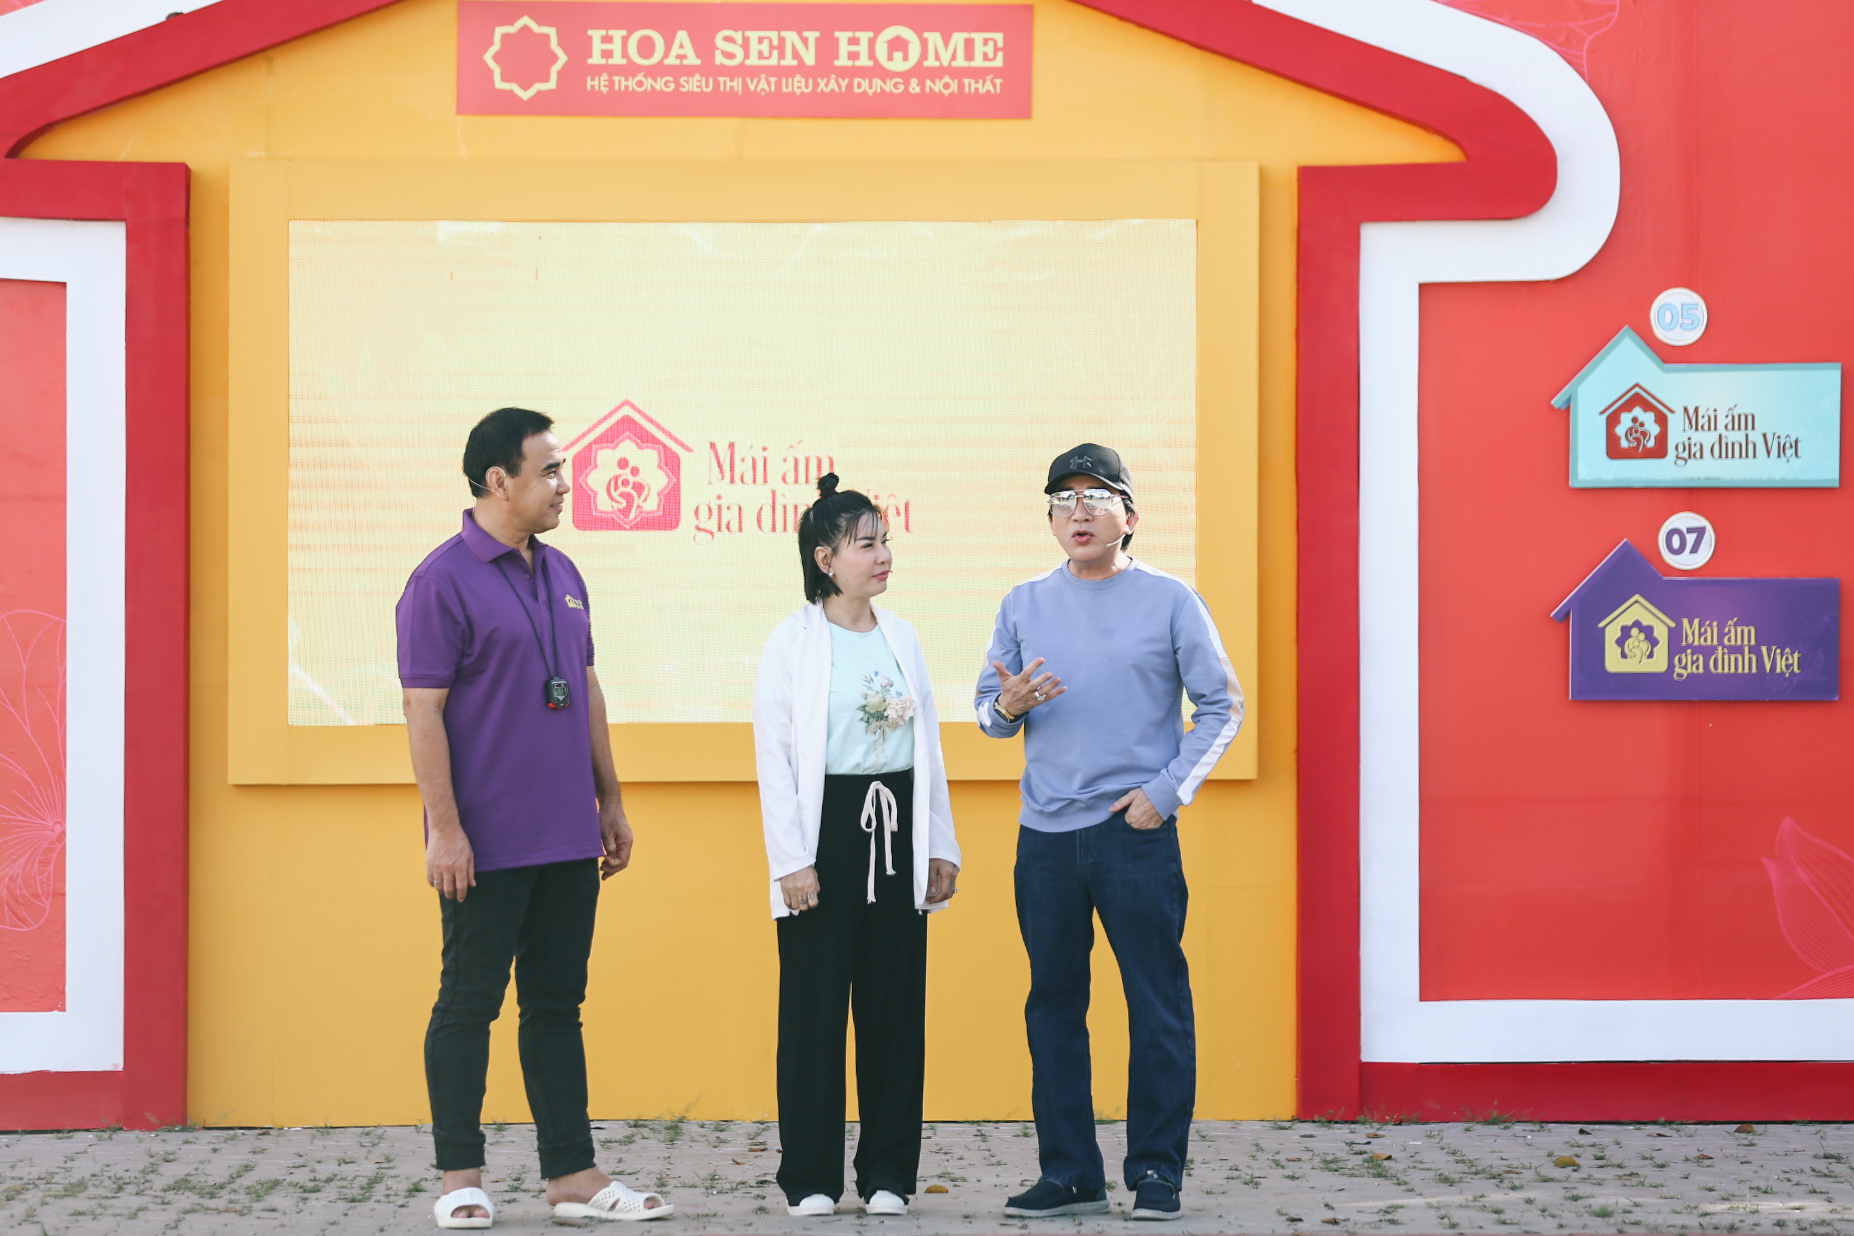 Mái ấm gia đình Việt: Kim Tử Long, Cát Phượng ấm lòng khi giúp trẻ mồ côi mang về 90 triệu tiền thưởng - ảnh 2